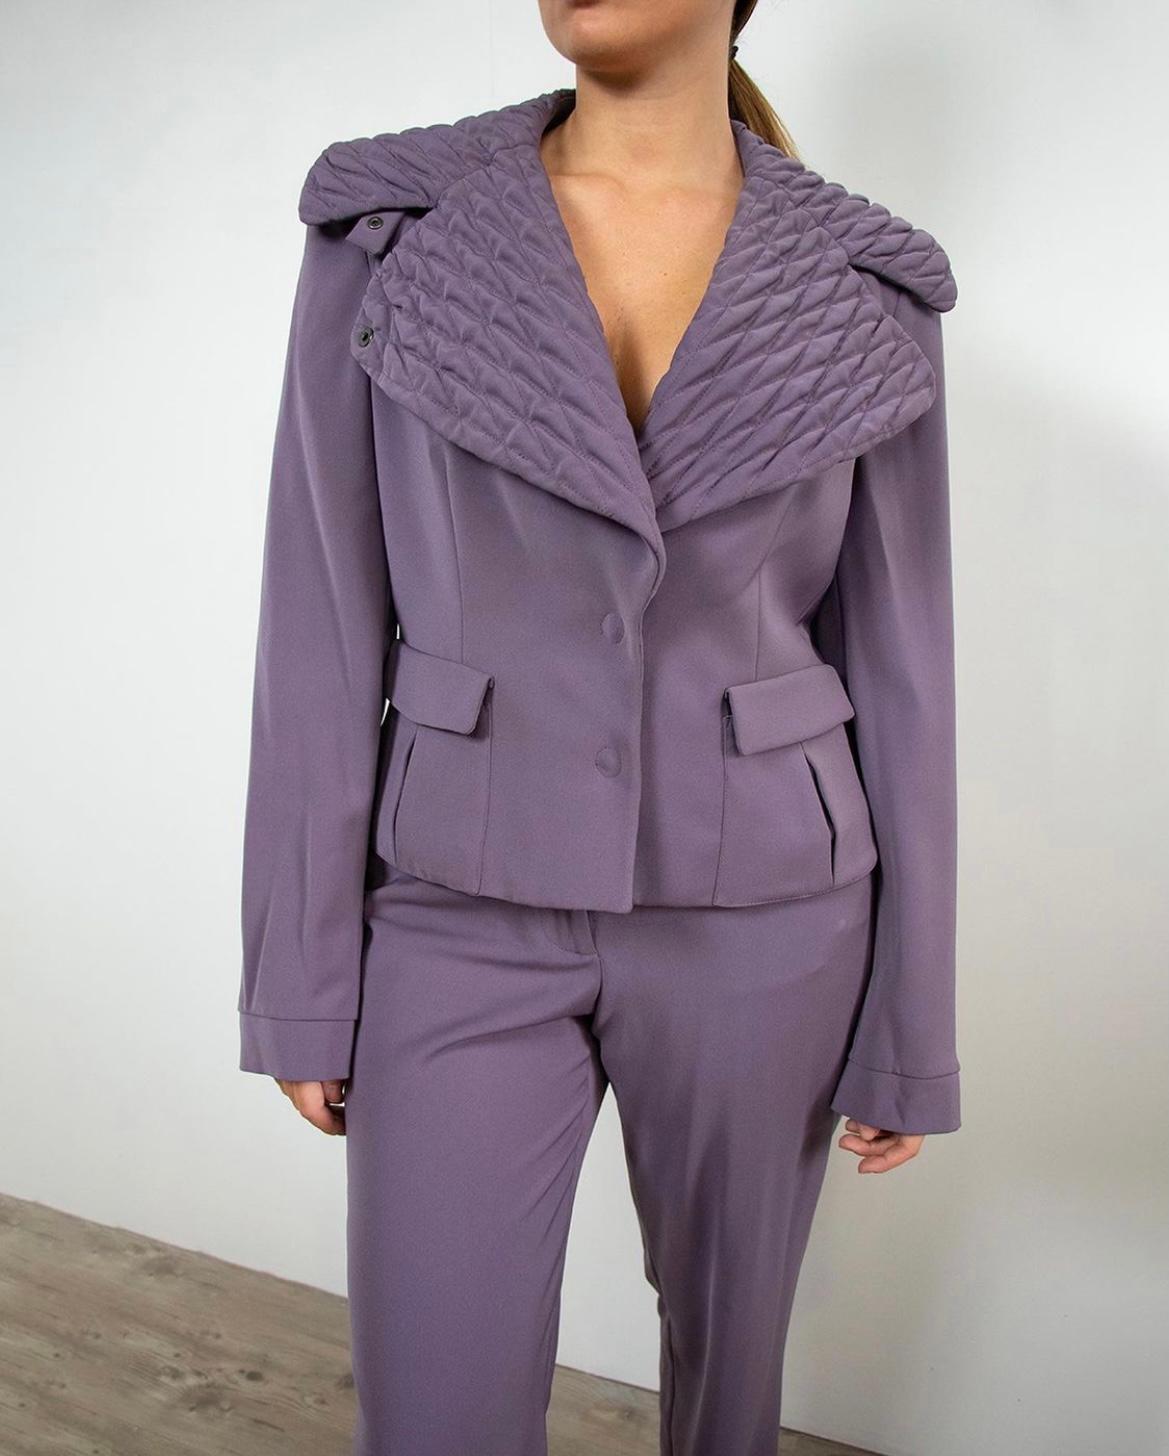 Giorgio Armani Polyester Suit in Purple 3